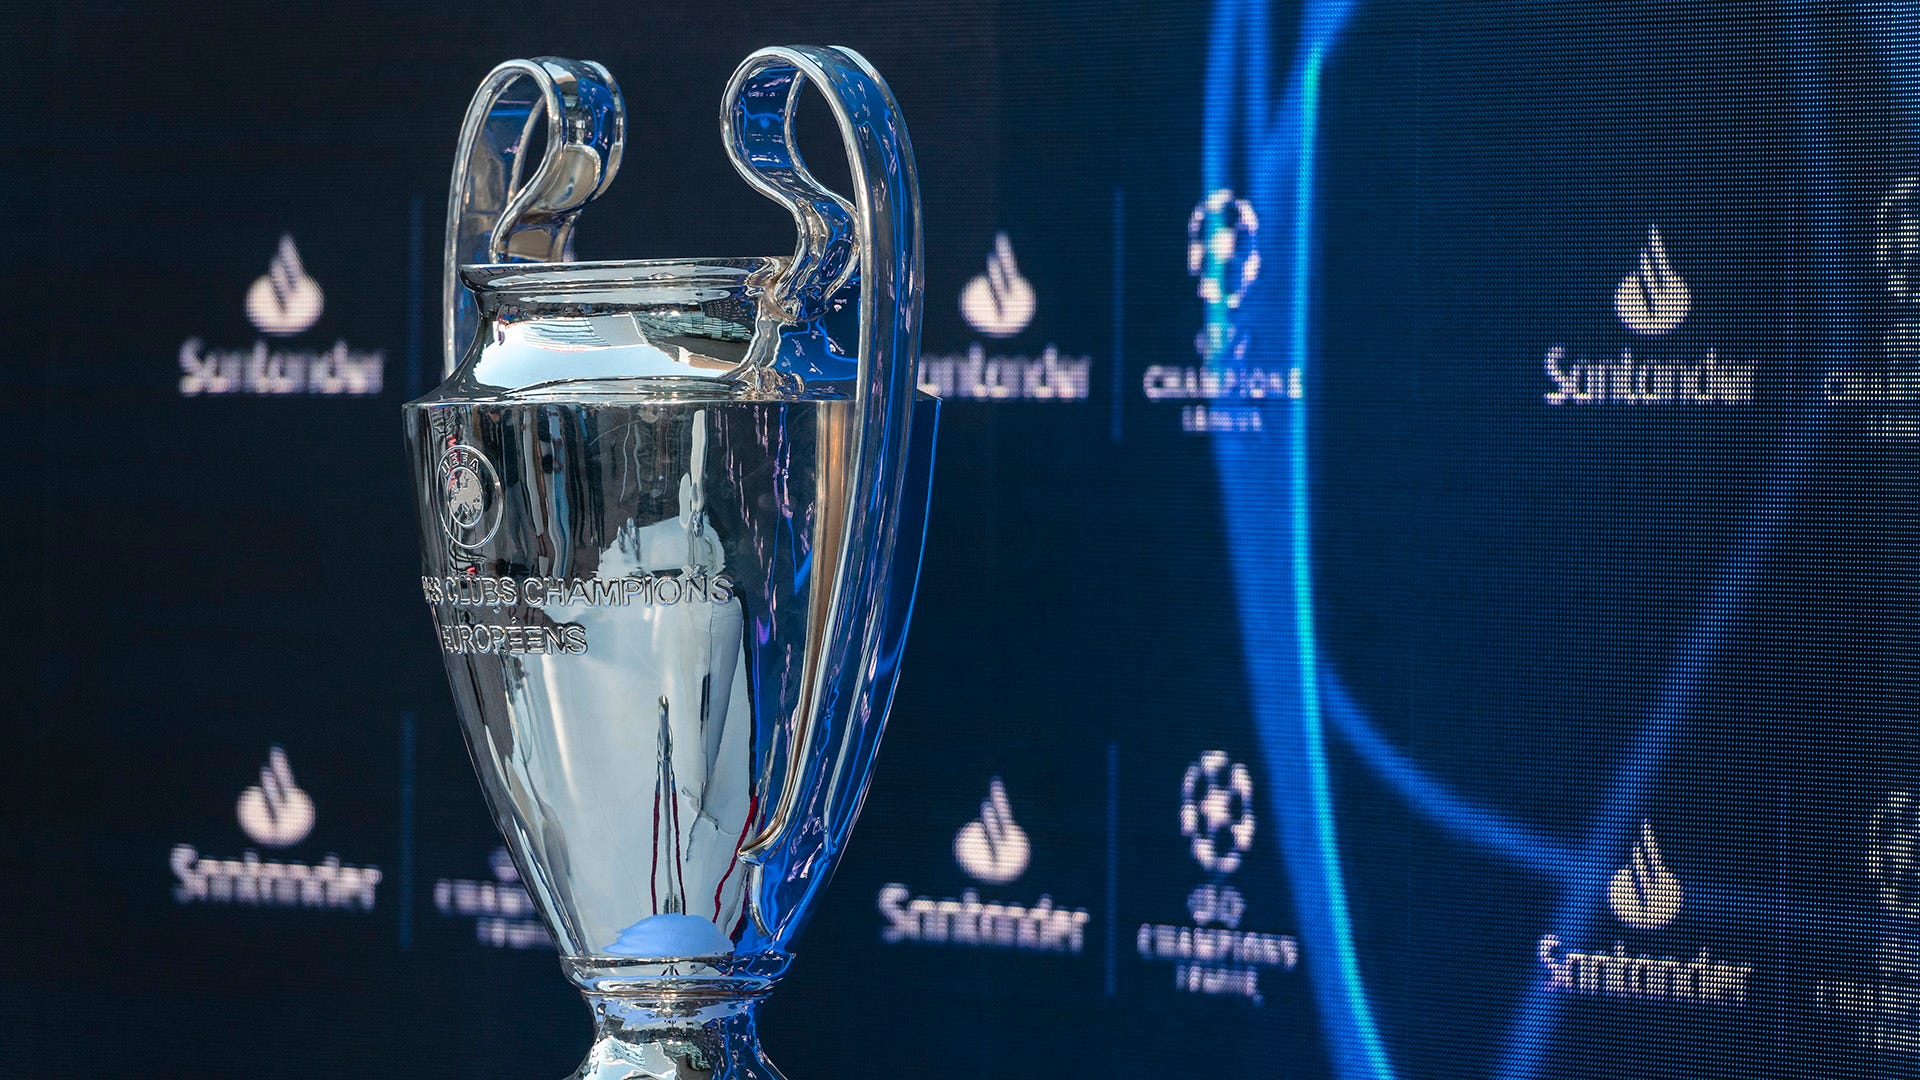 Qual é a premiação em dinheiro da Champions League?